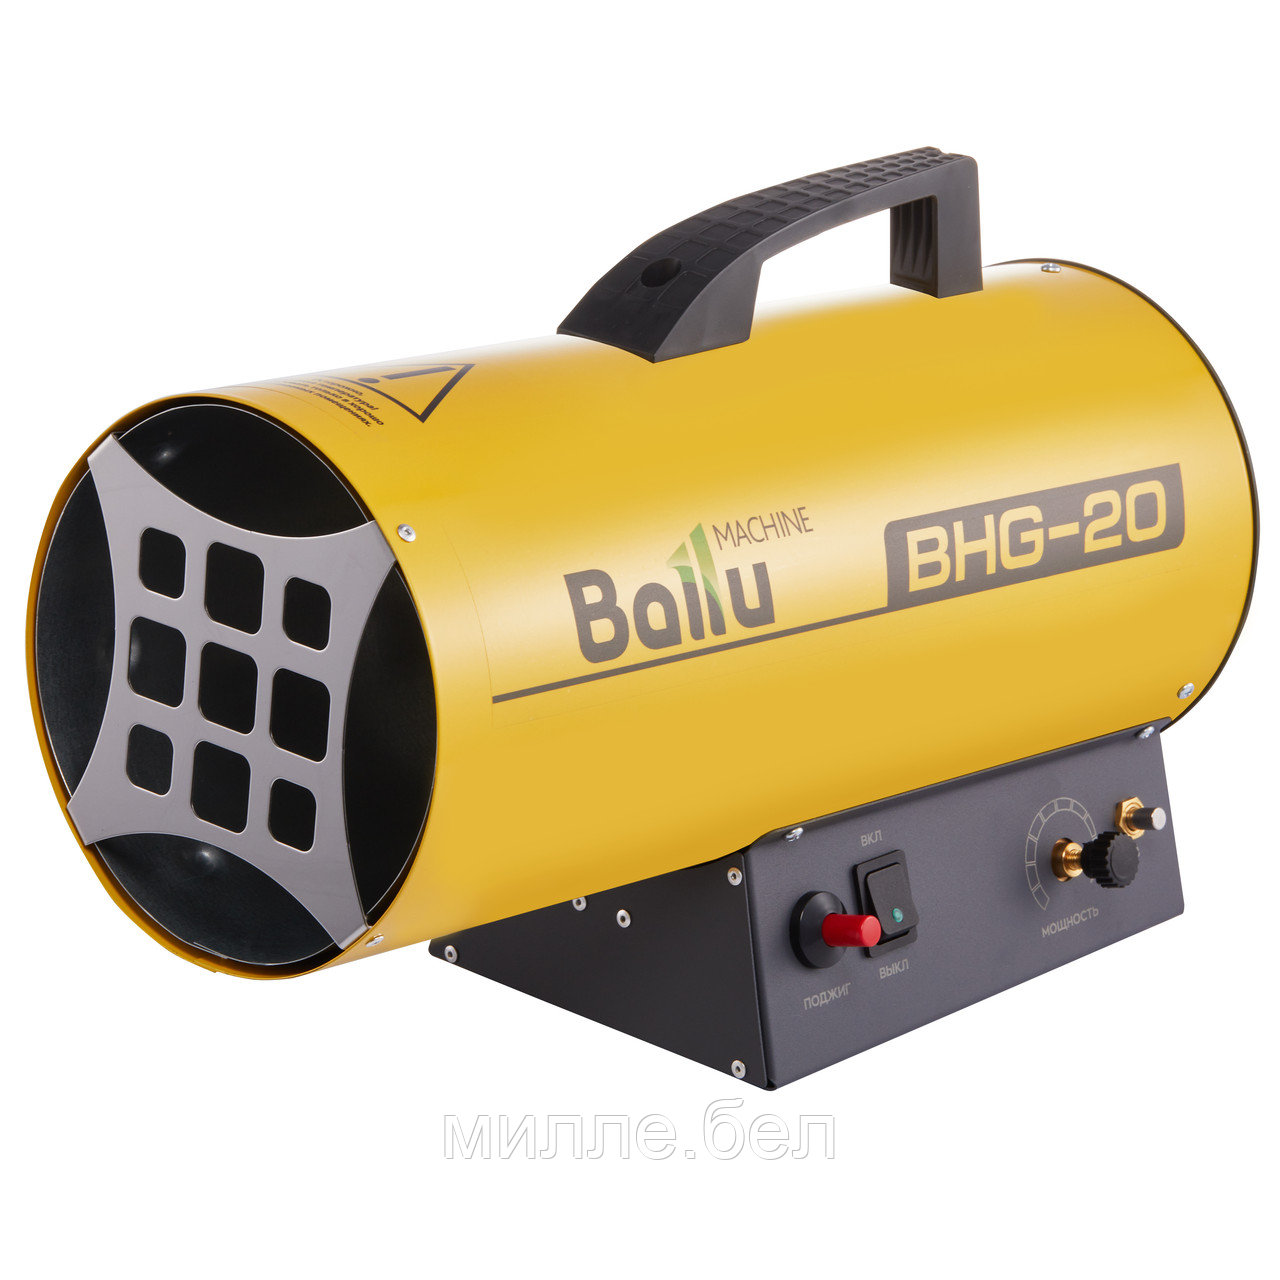 Газовый теплогенератор Ballu BHG-20